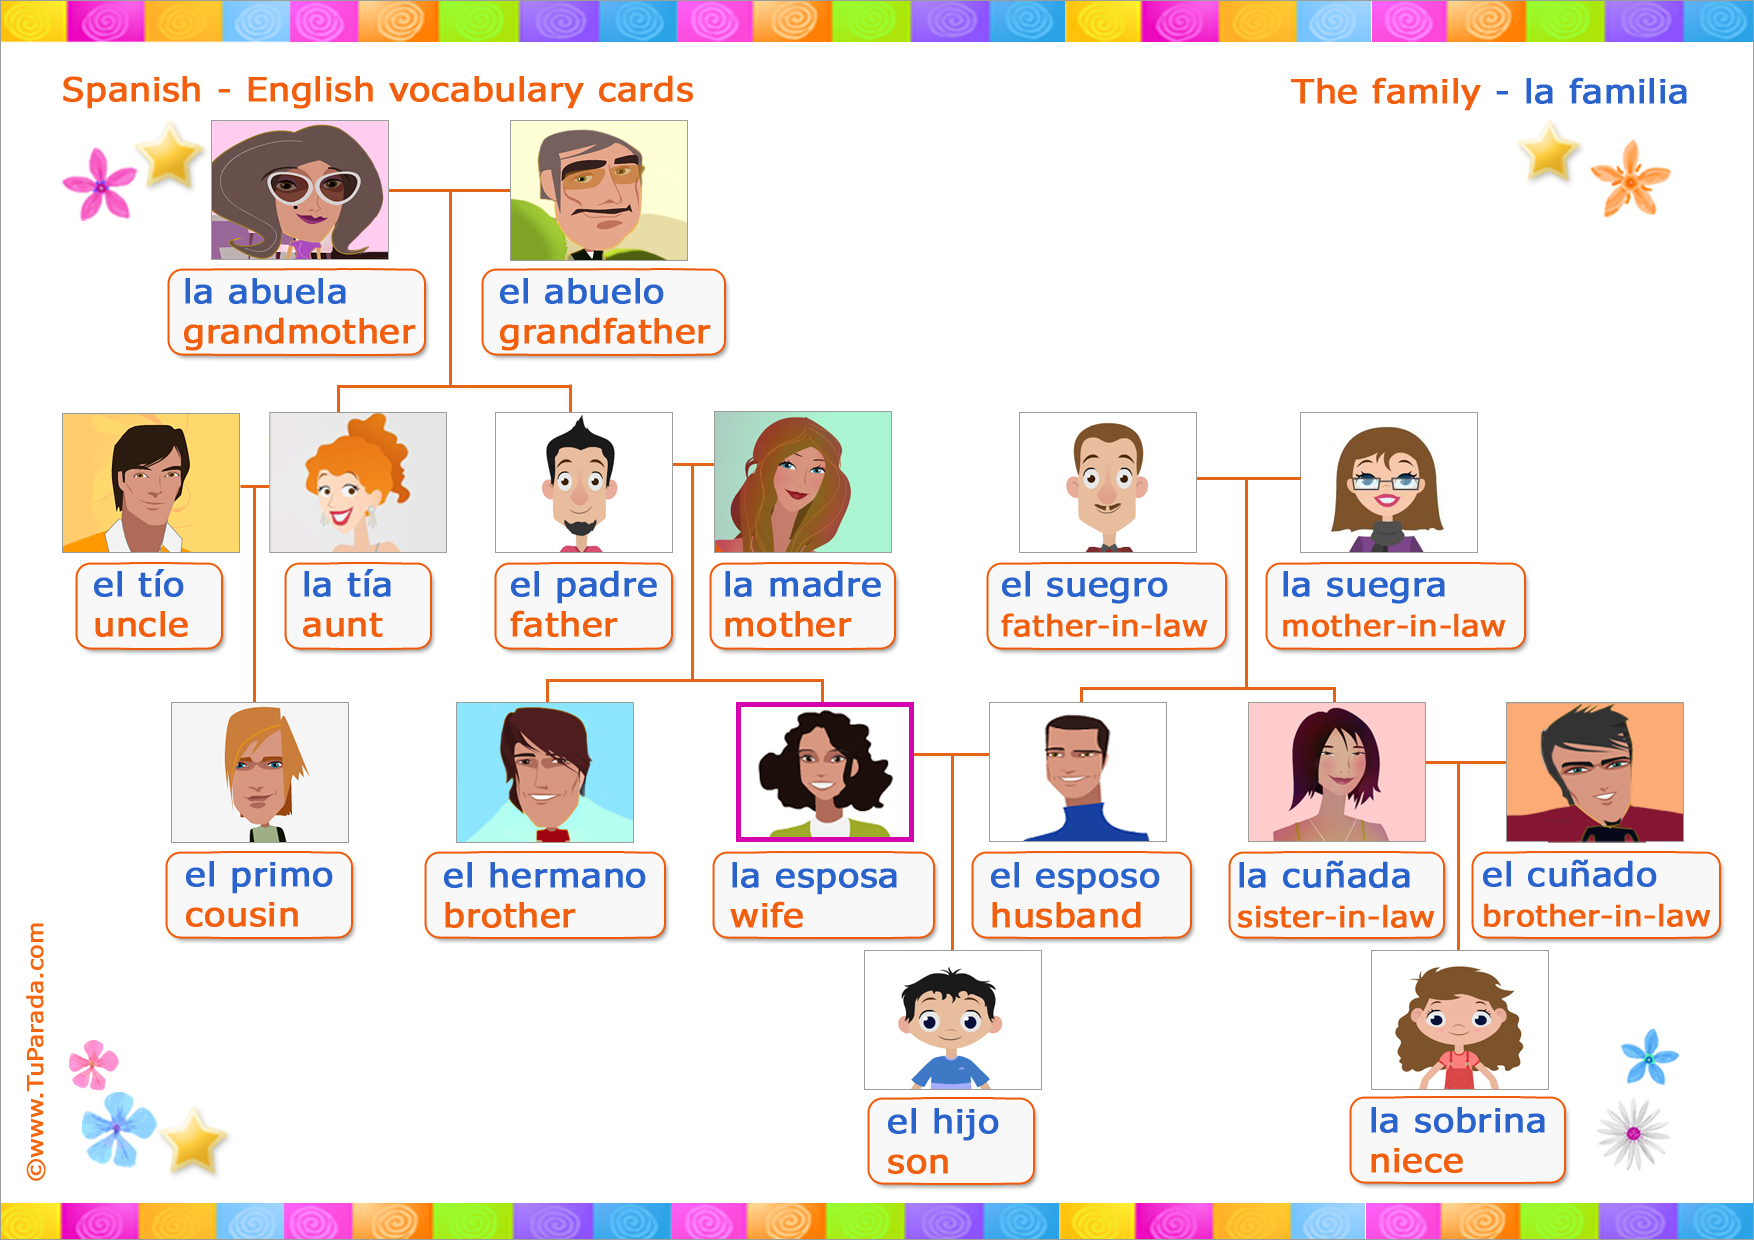 Family words vocabulary. La familia семья vocabulario. Родственники на испанском языке. Родственники по испанскому.